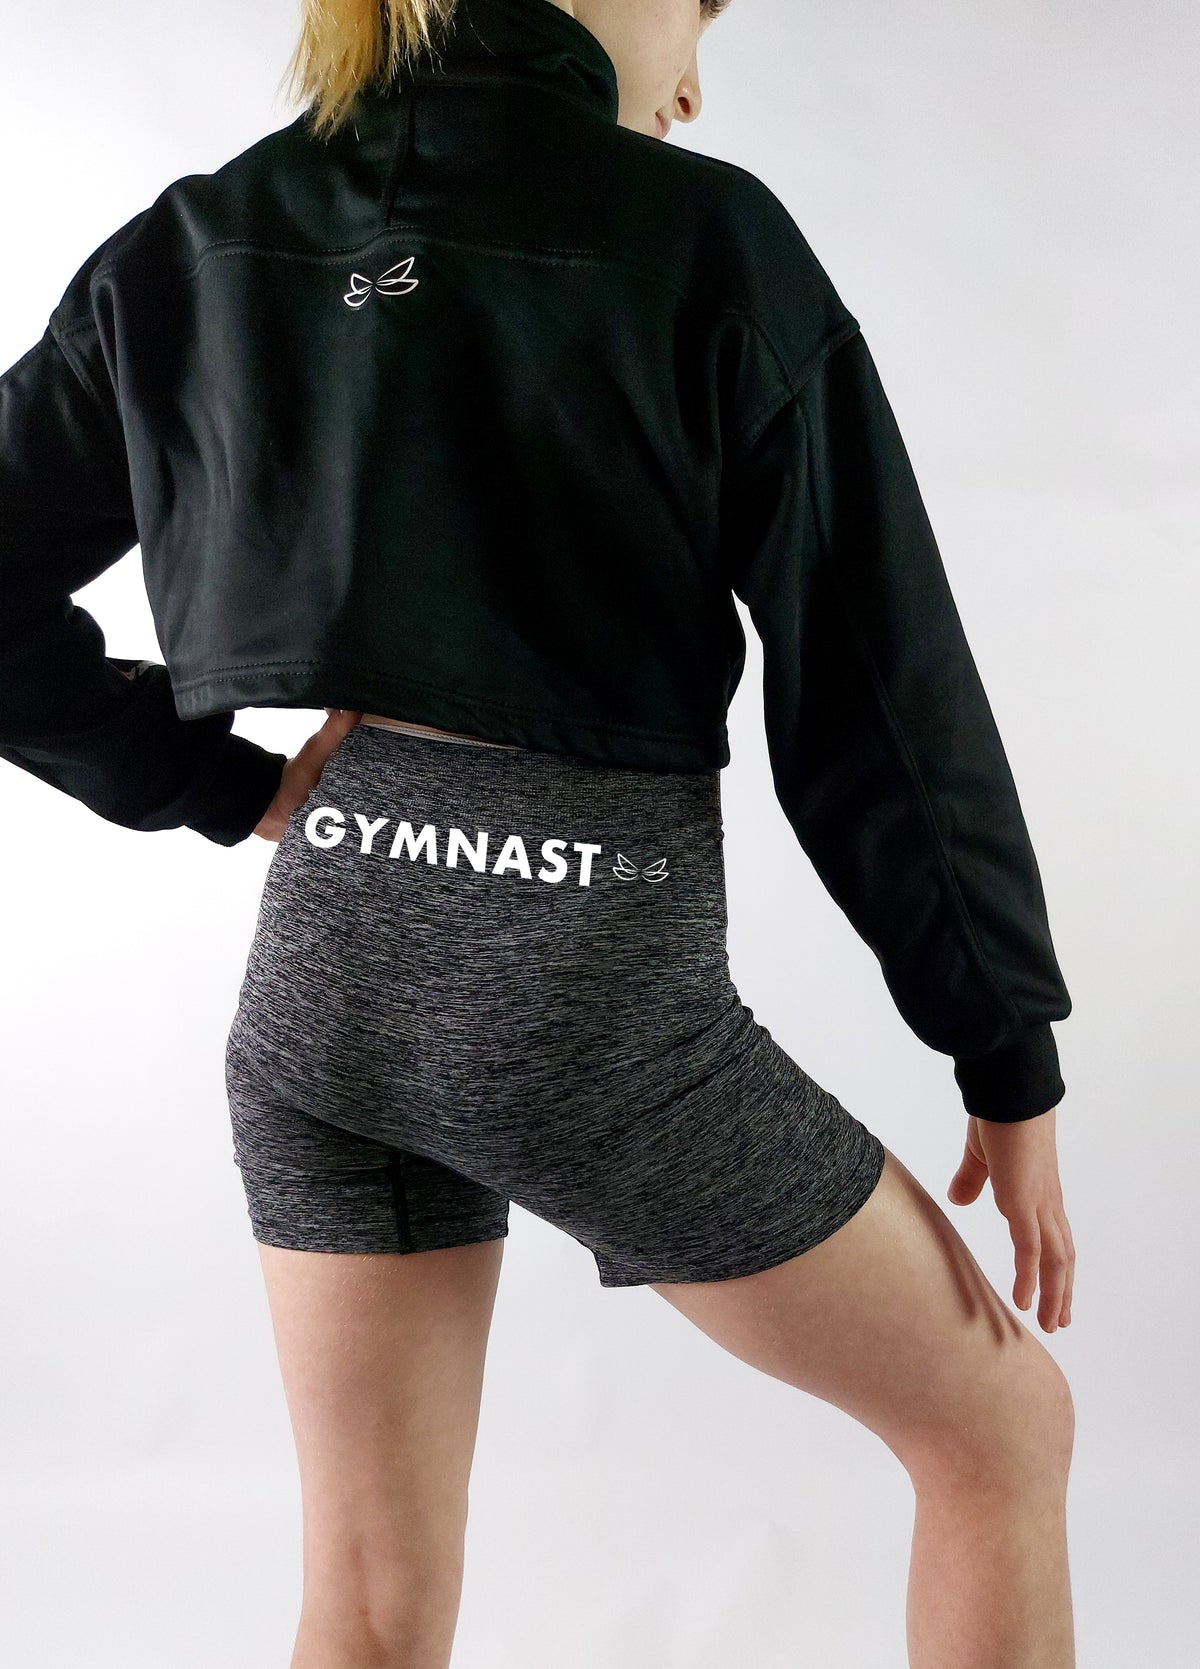 Gymnast seamless shorts - Dragonfly Leotards - Children's Sportswear